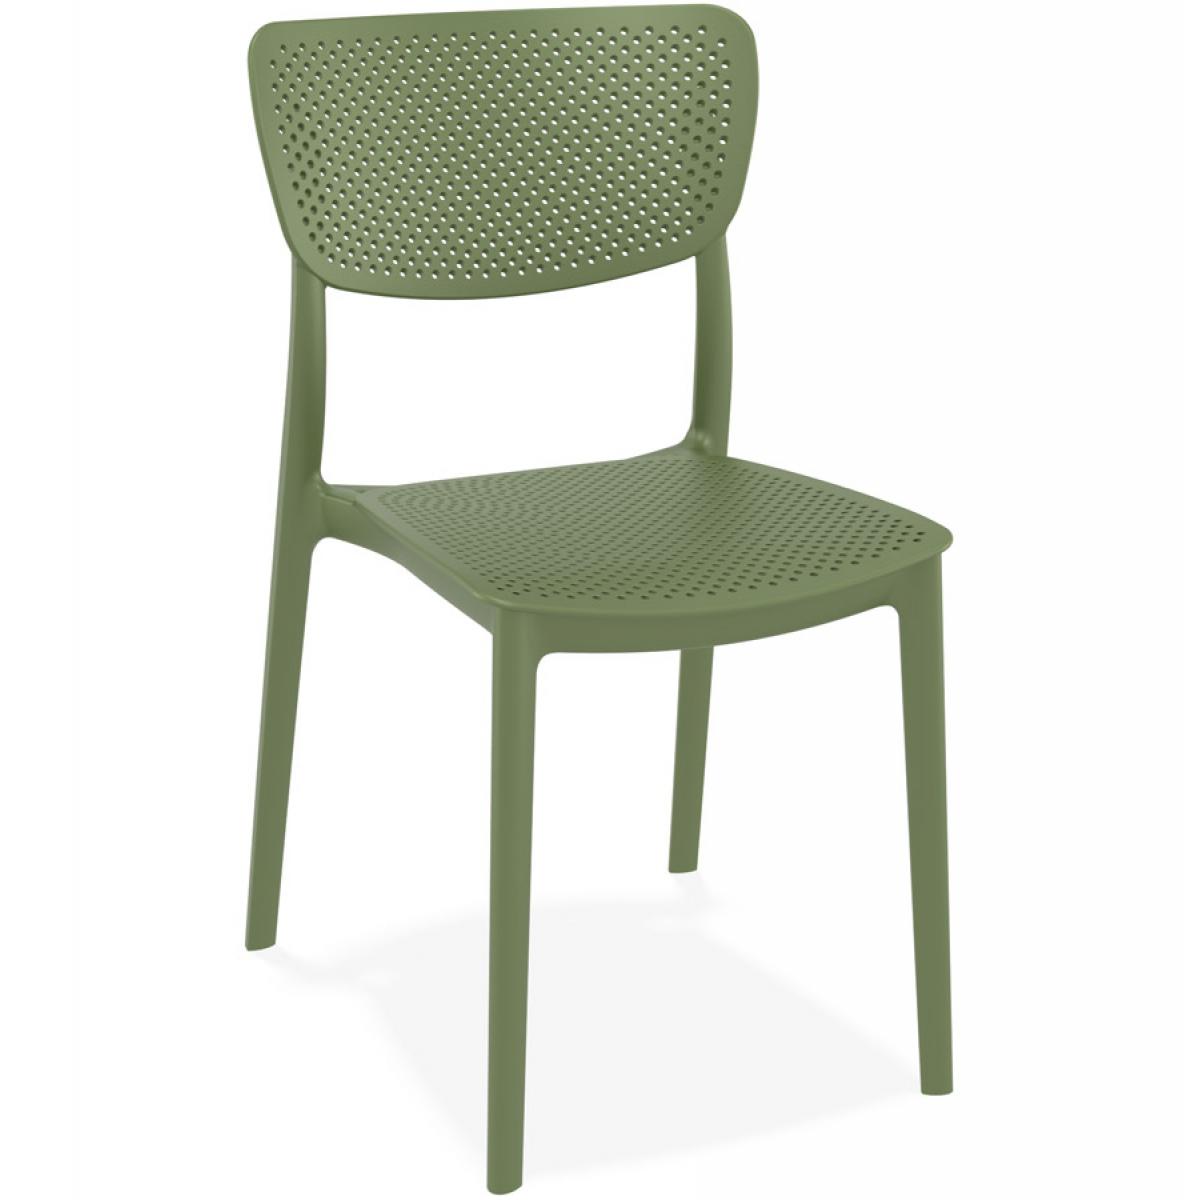 Alterego - Chaise de terrasse perforée 'PALMA' en matière plastique verte - Chaises